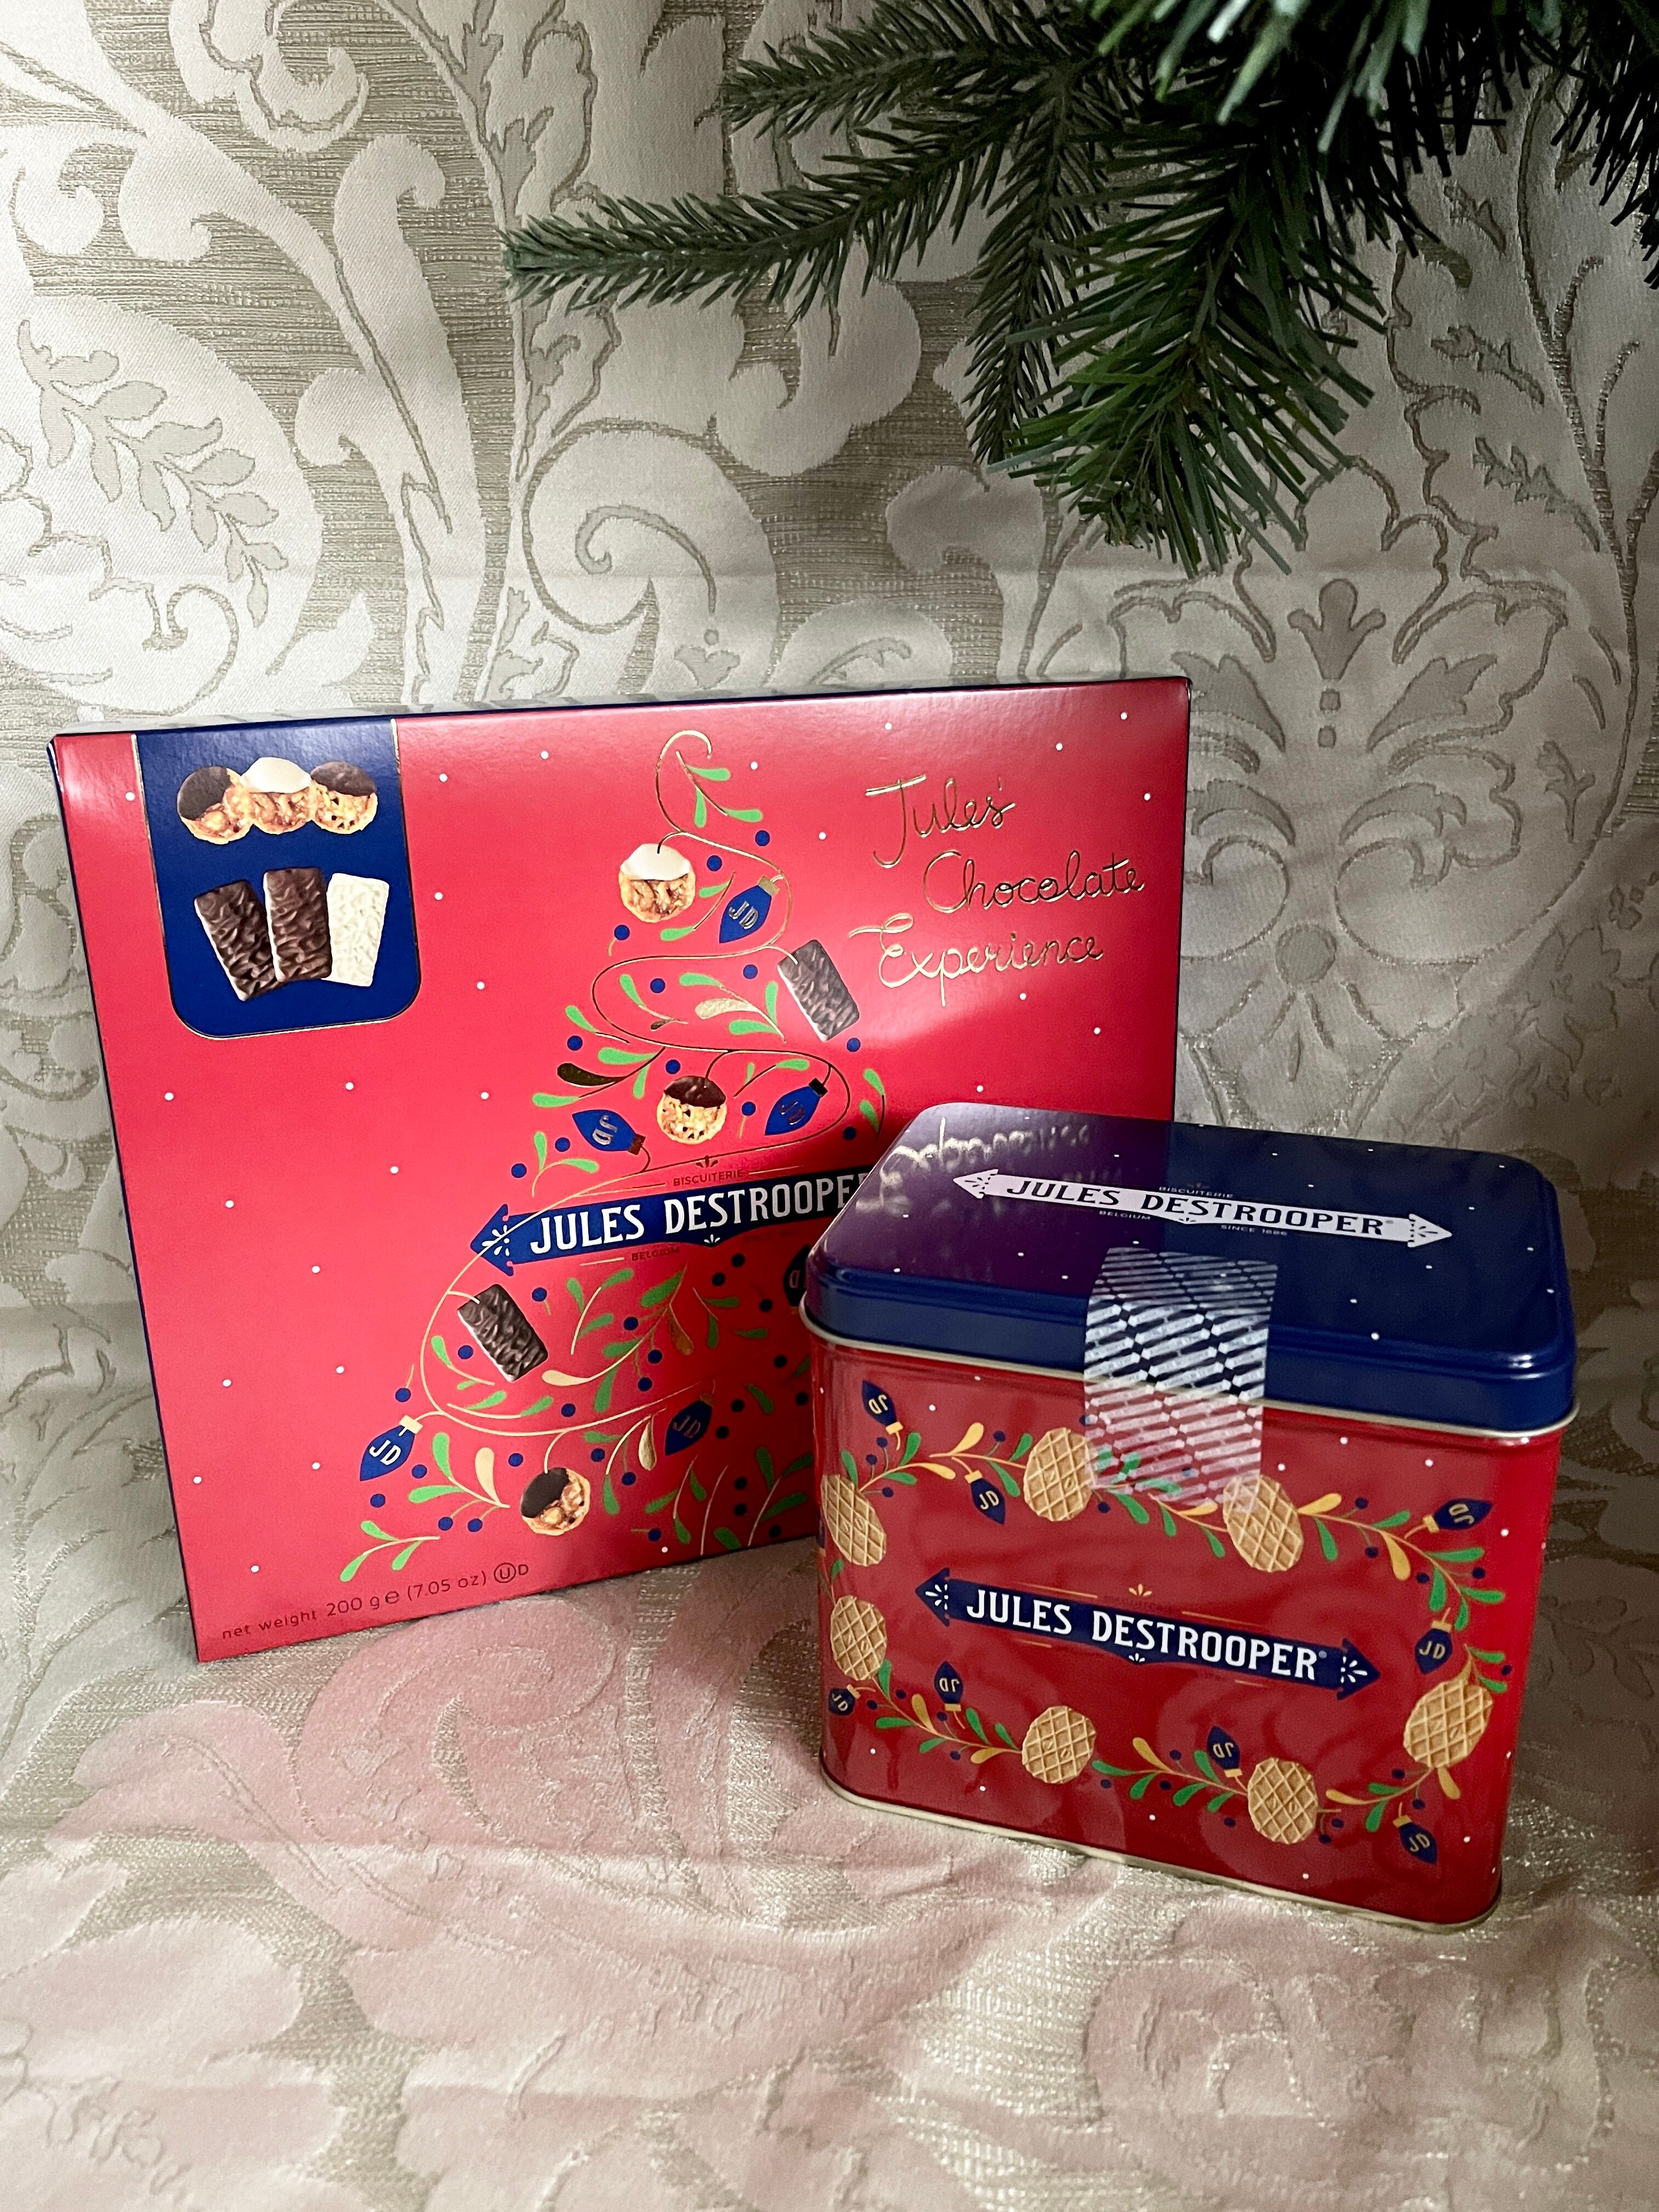 ★2022クリスマス特別パック版★ 『ジュールス・デストルーパー 』チョコレートアソート JULES DESTROOPER ベルギー王室御用達